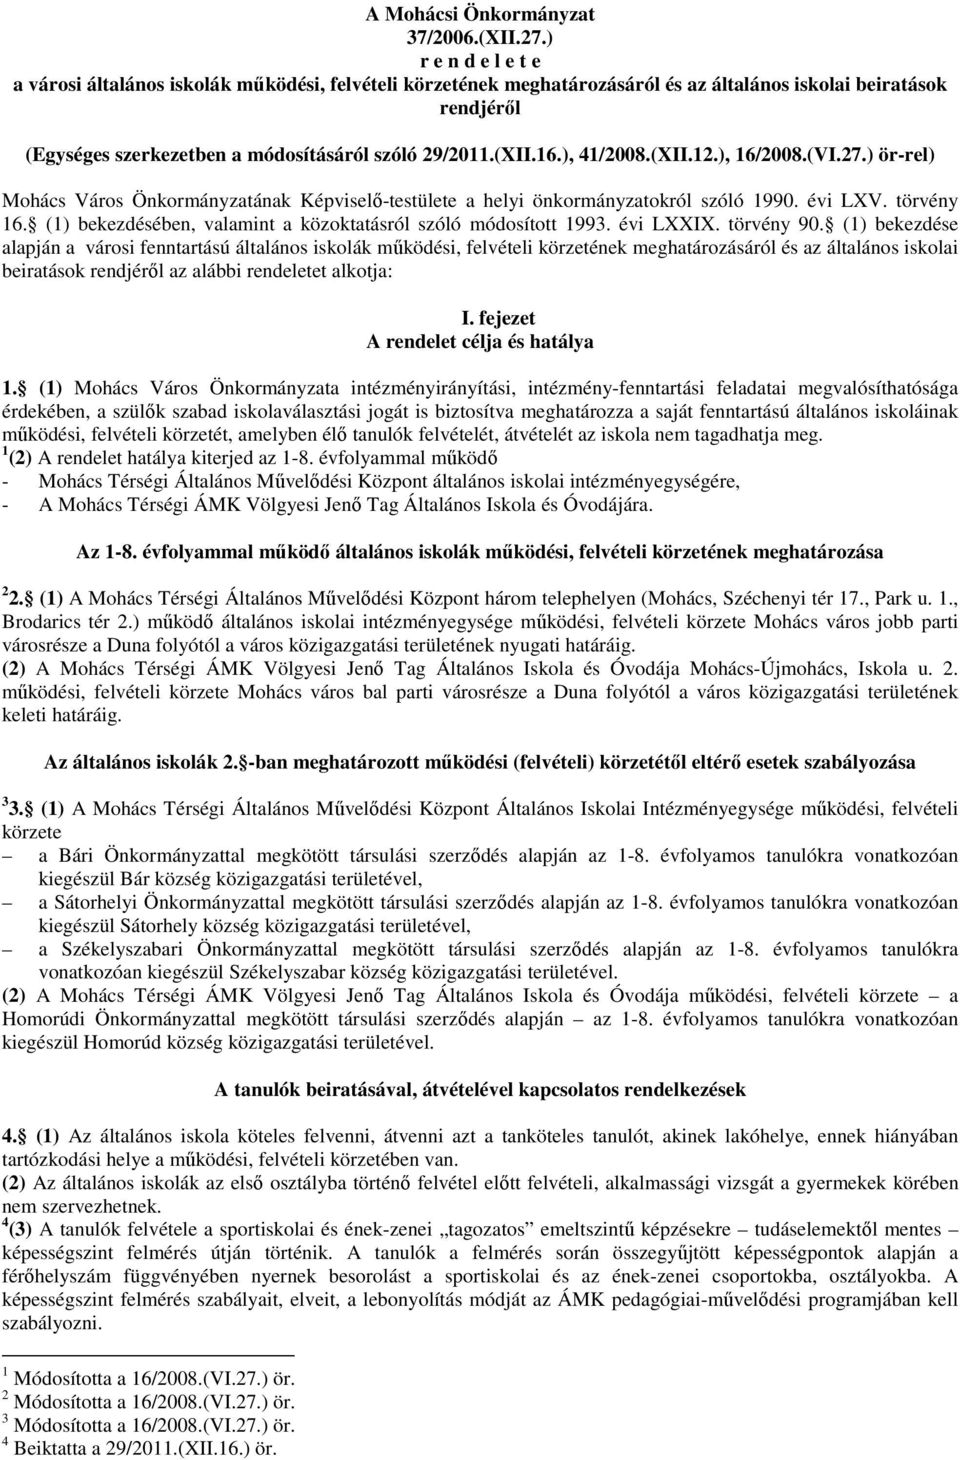 16.), 41/2008.(XII.12.), 16/2008.(VI.27.) ör-rel) Mohács Város Önkormányzatának Képviselő-testülete a helyi önkormányzatokról szóló 1990. évi LXV. törvény 16.